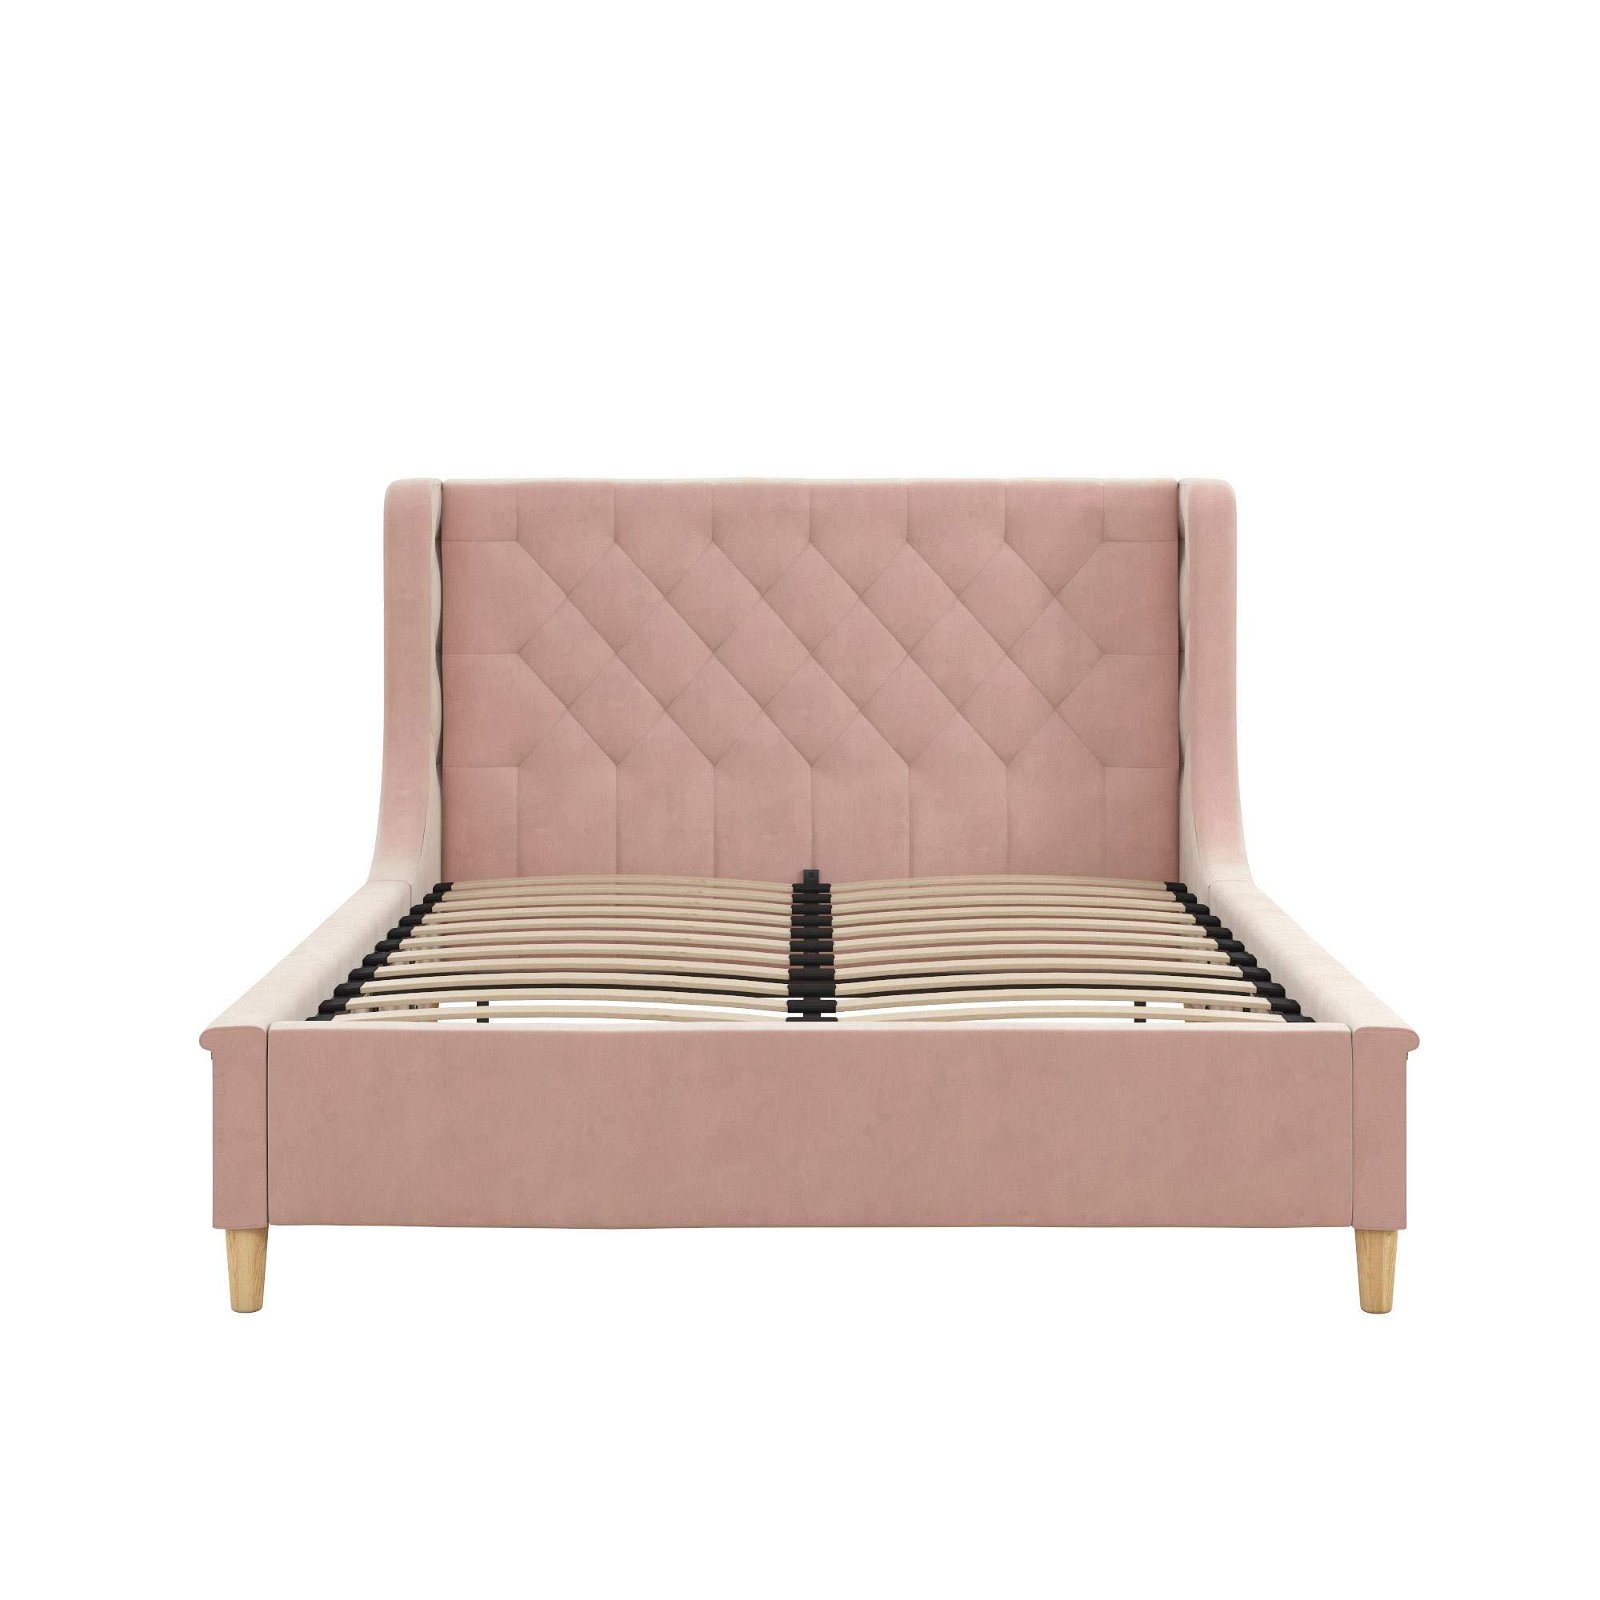 Umikk Modern European Pink Full Size Upholstered Bed for Girls and Boys 2